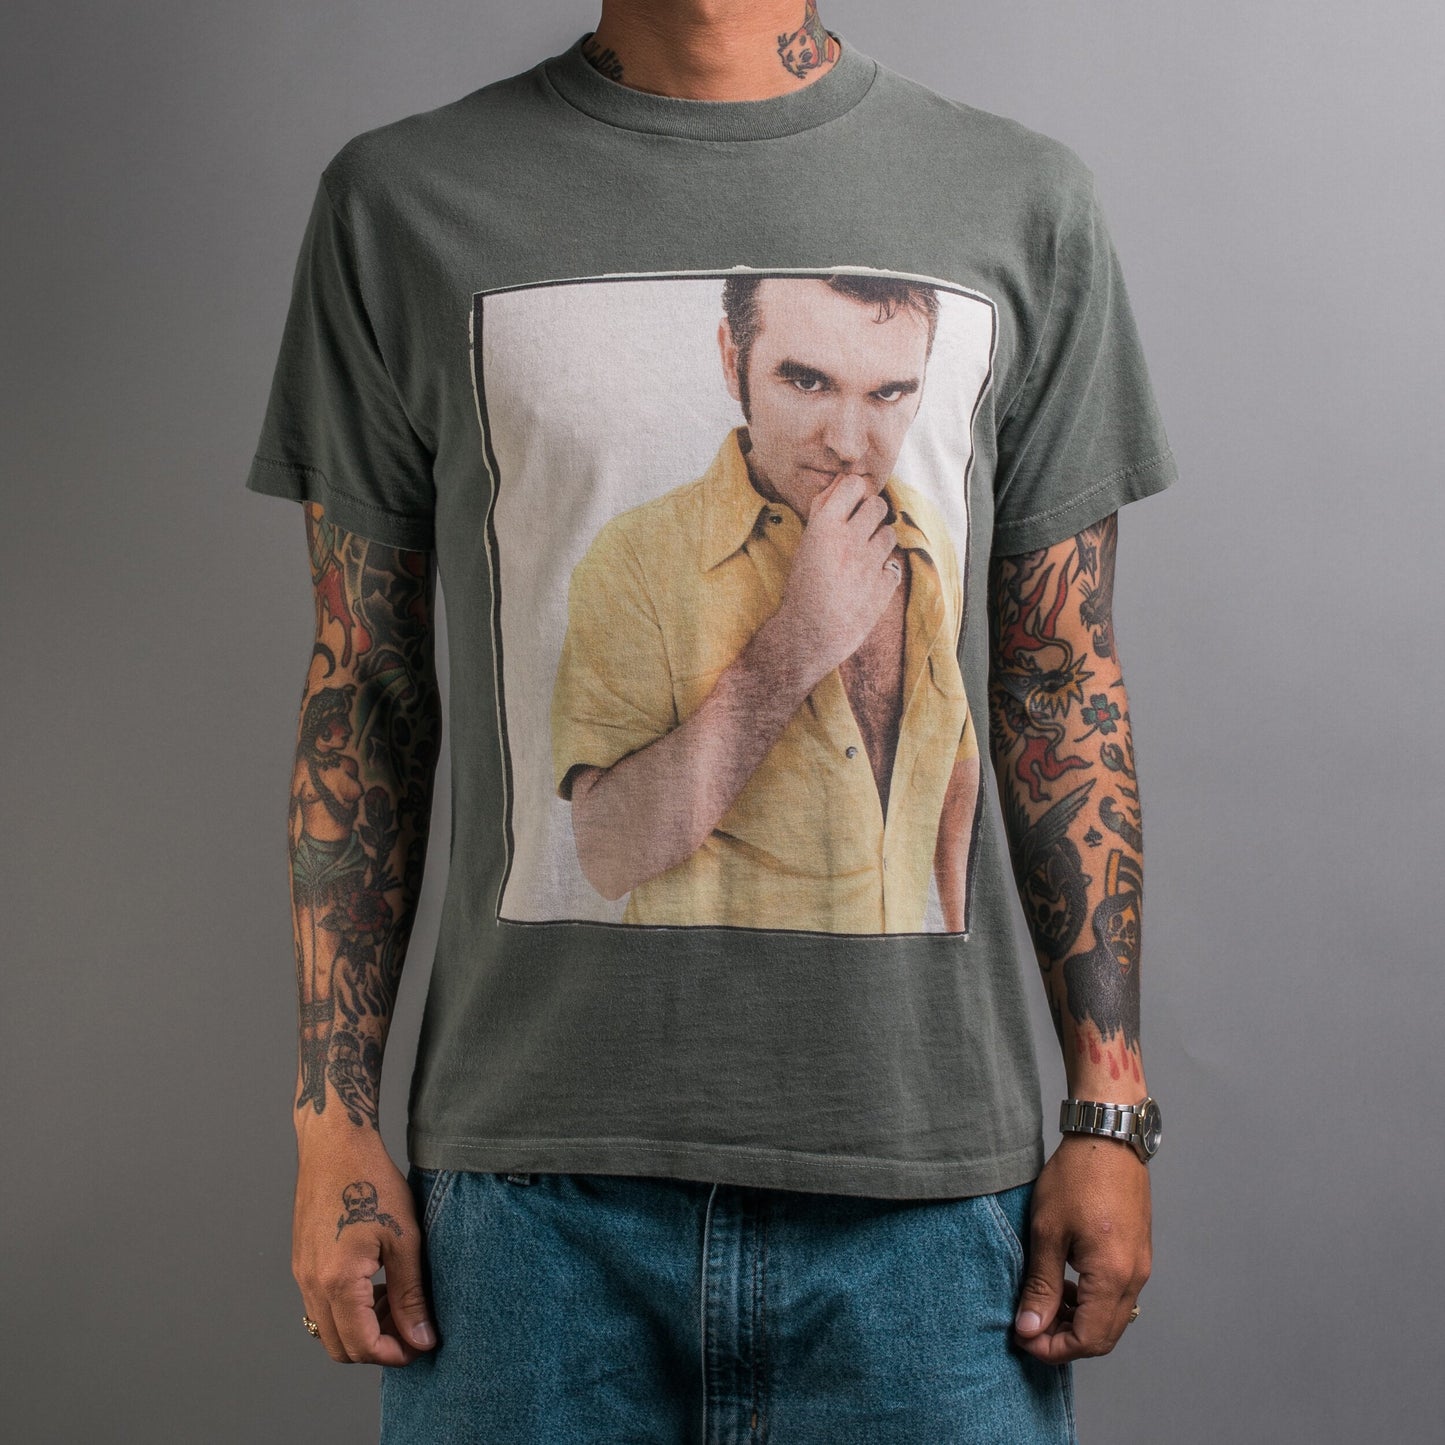 Vintage Morrissey Tour T-Shirt